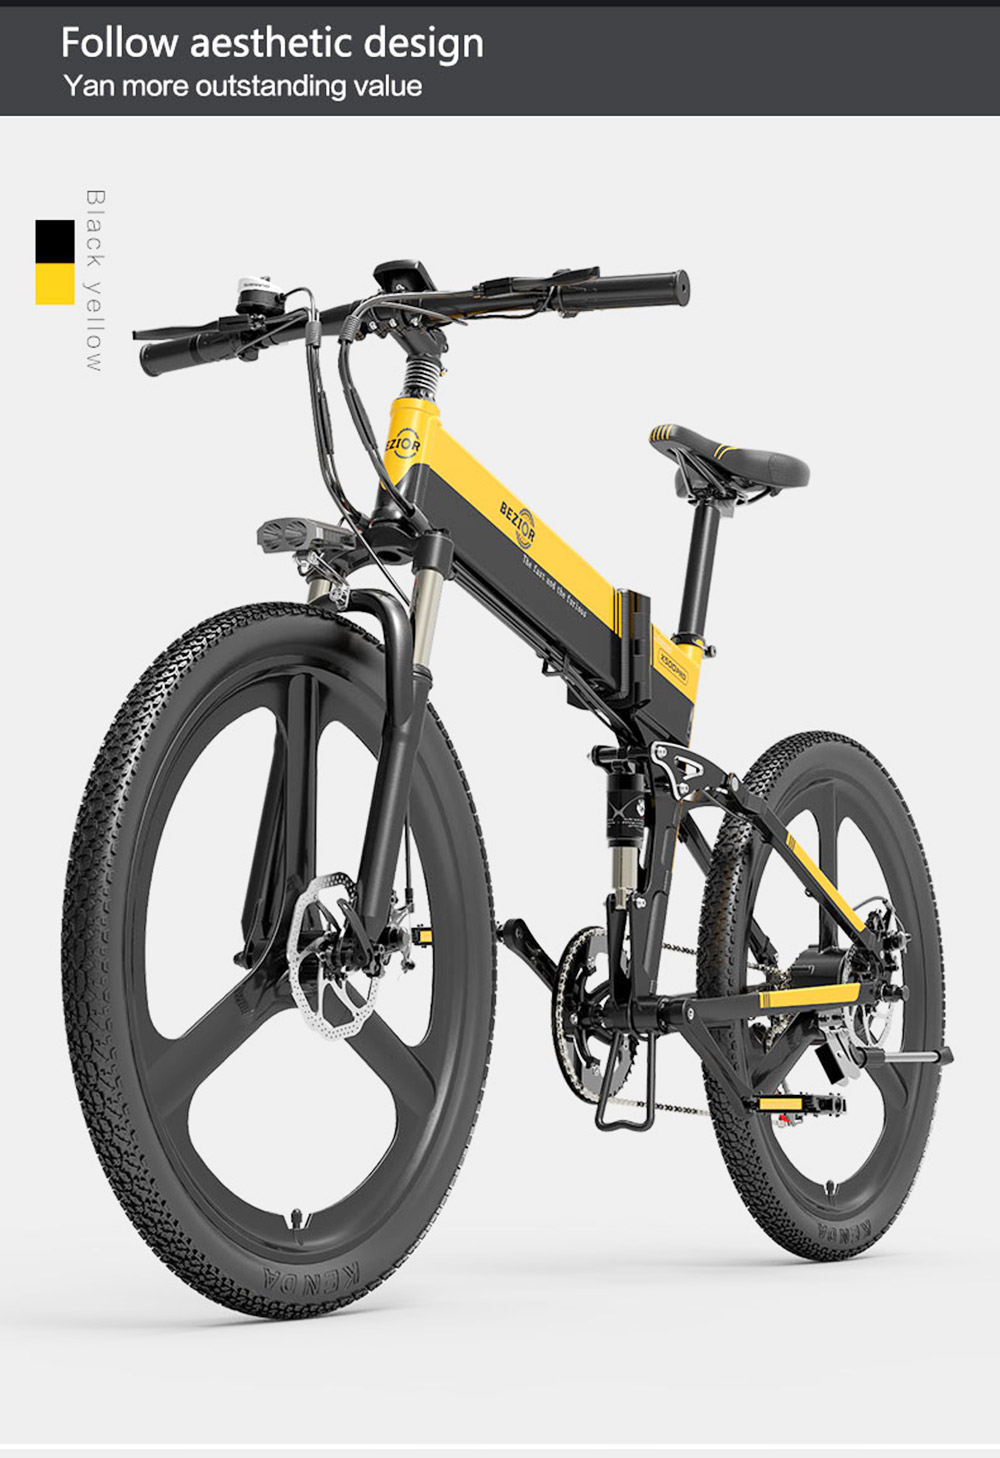 BEZIOR X500PRO Folding Electric Mountain Bike 500W 30Km/h Black Yellow